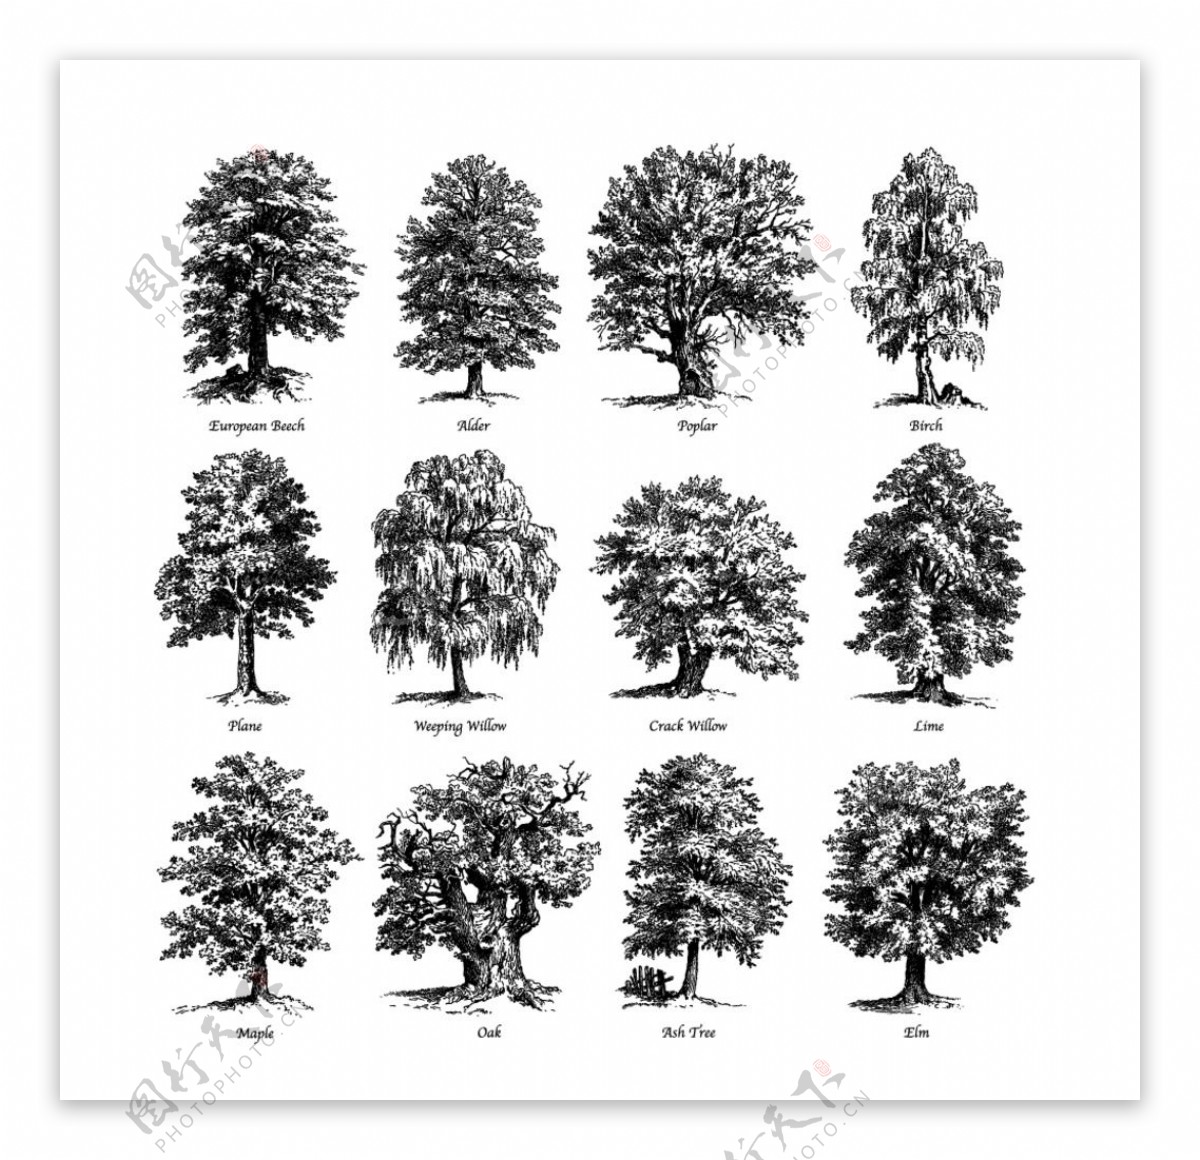 12款手绘茂盛树木矢量素材